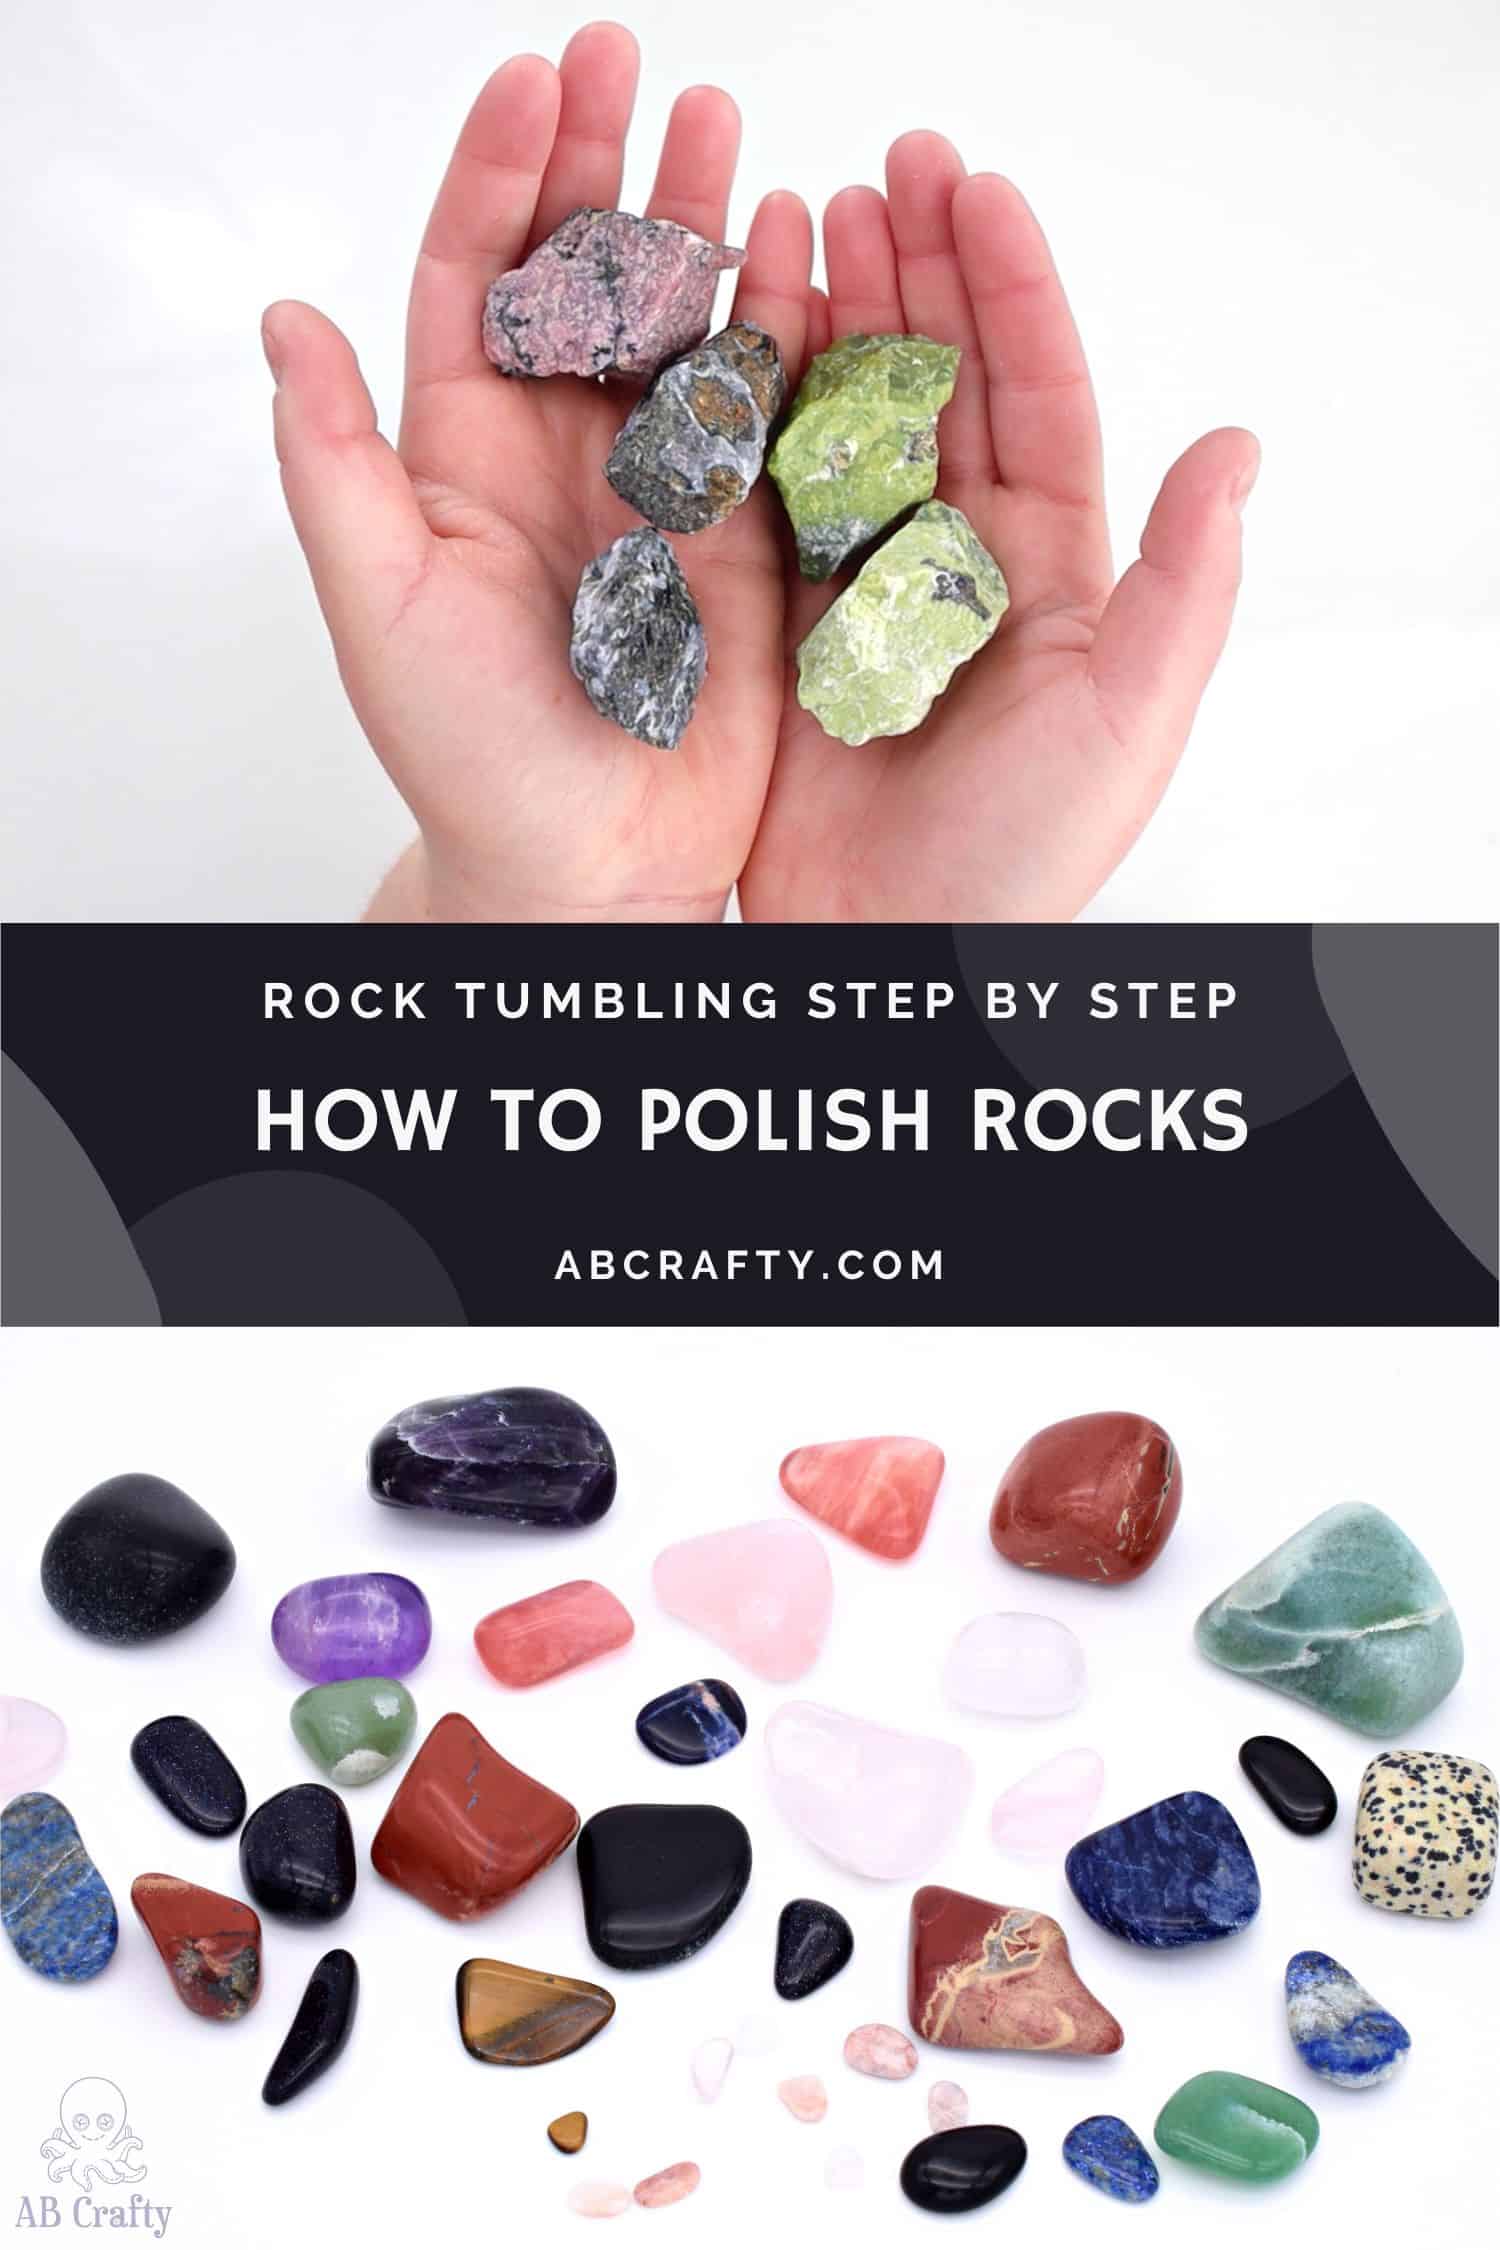  Rock Tumbler Kit, Professional Tumbling Stone Polisher